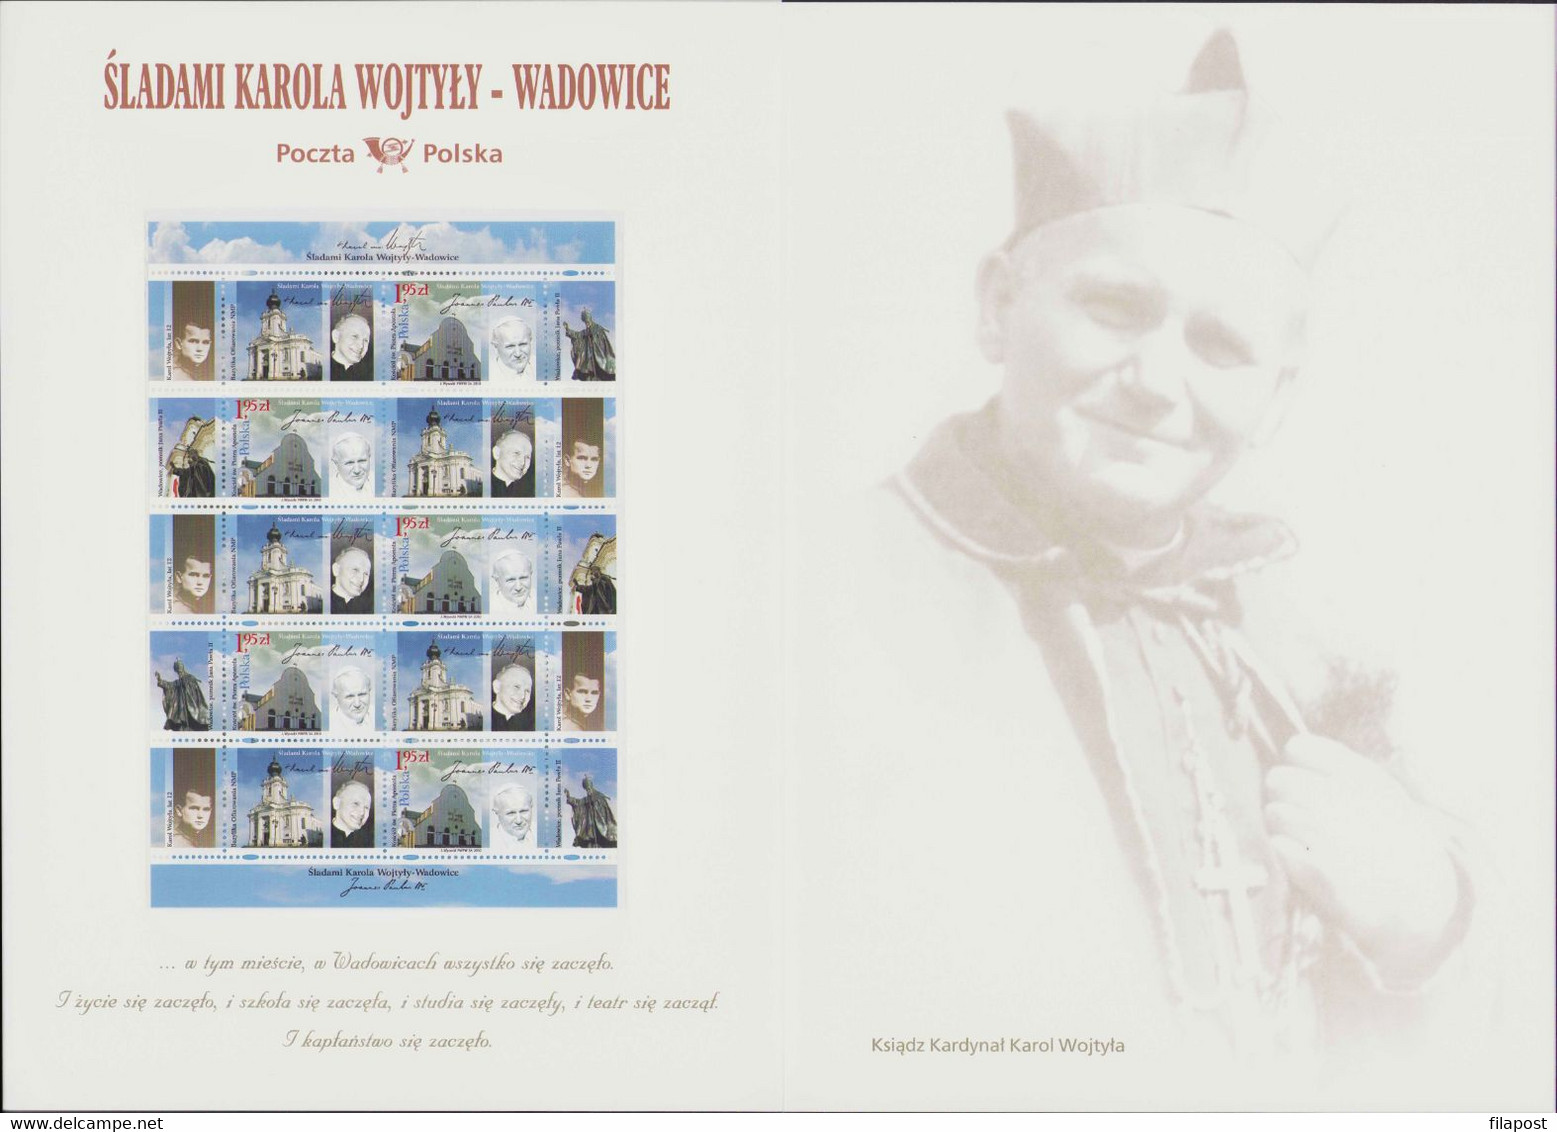 Poland 2010 Mi 4484 Souvenir Booklet / In The Steps Of Karol Wojtyla - Wadowice, Pope John Paul II / Full Sheet MNH**FV - Rollo De Sellos